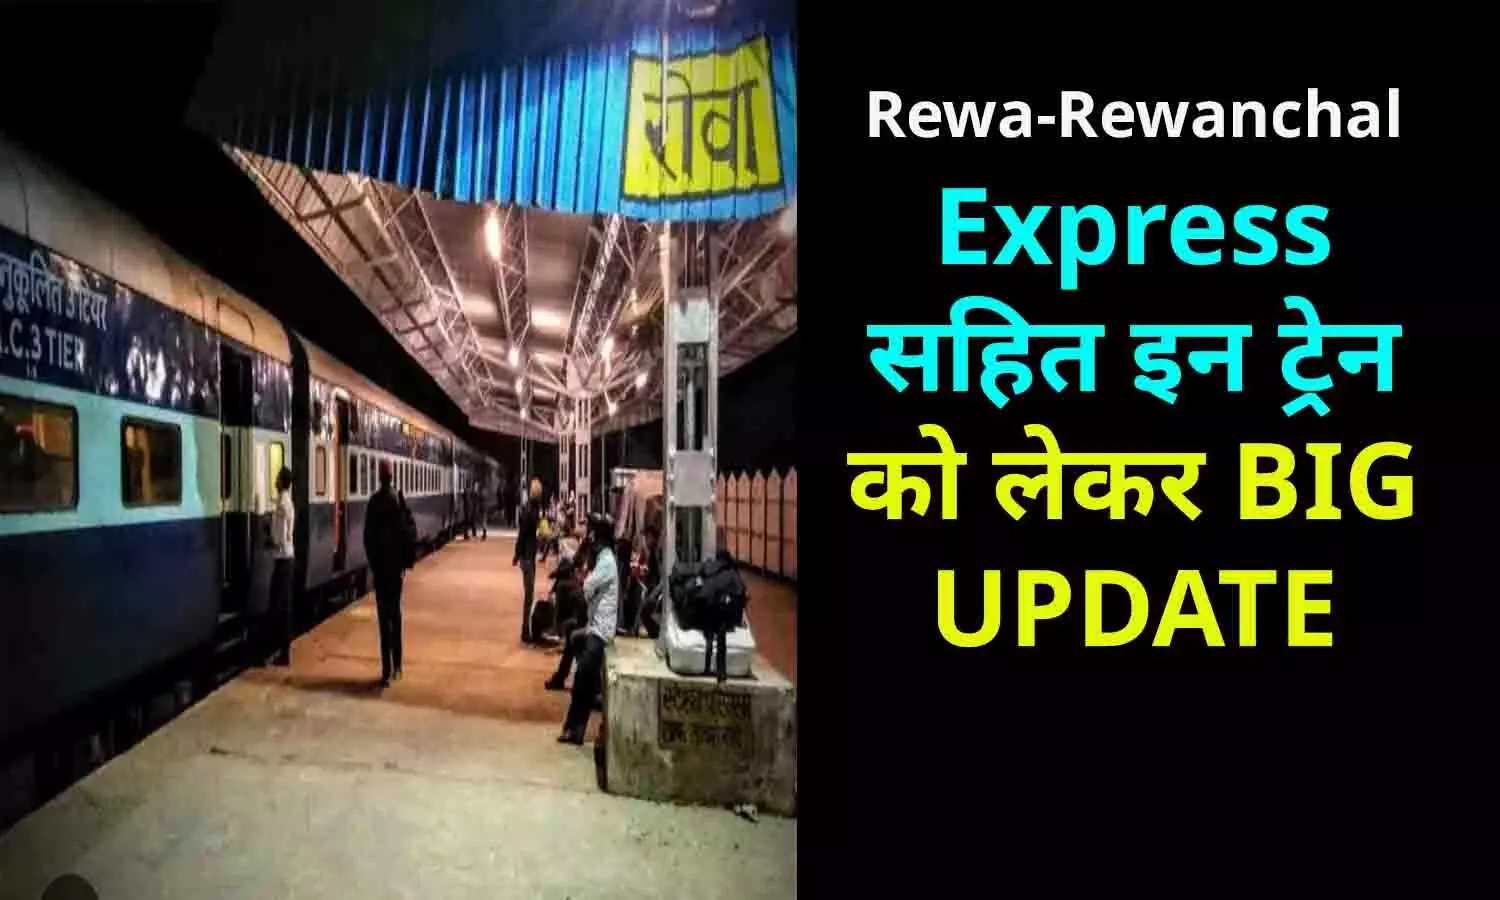 Rewa-Rewanchal Express सहित इन ट्रेन को लेकर BIG UPDATE, यात्रियों को बड़ा तोहफा